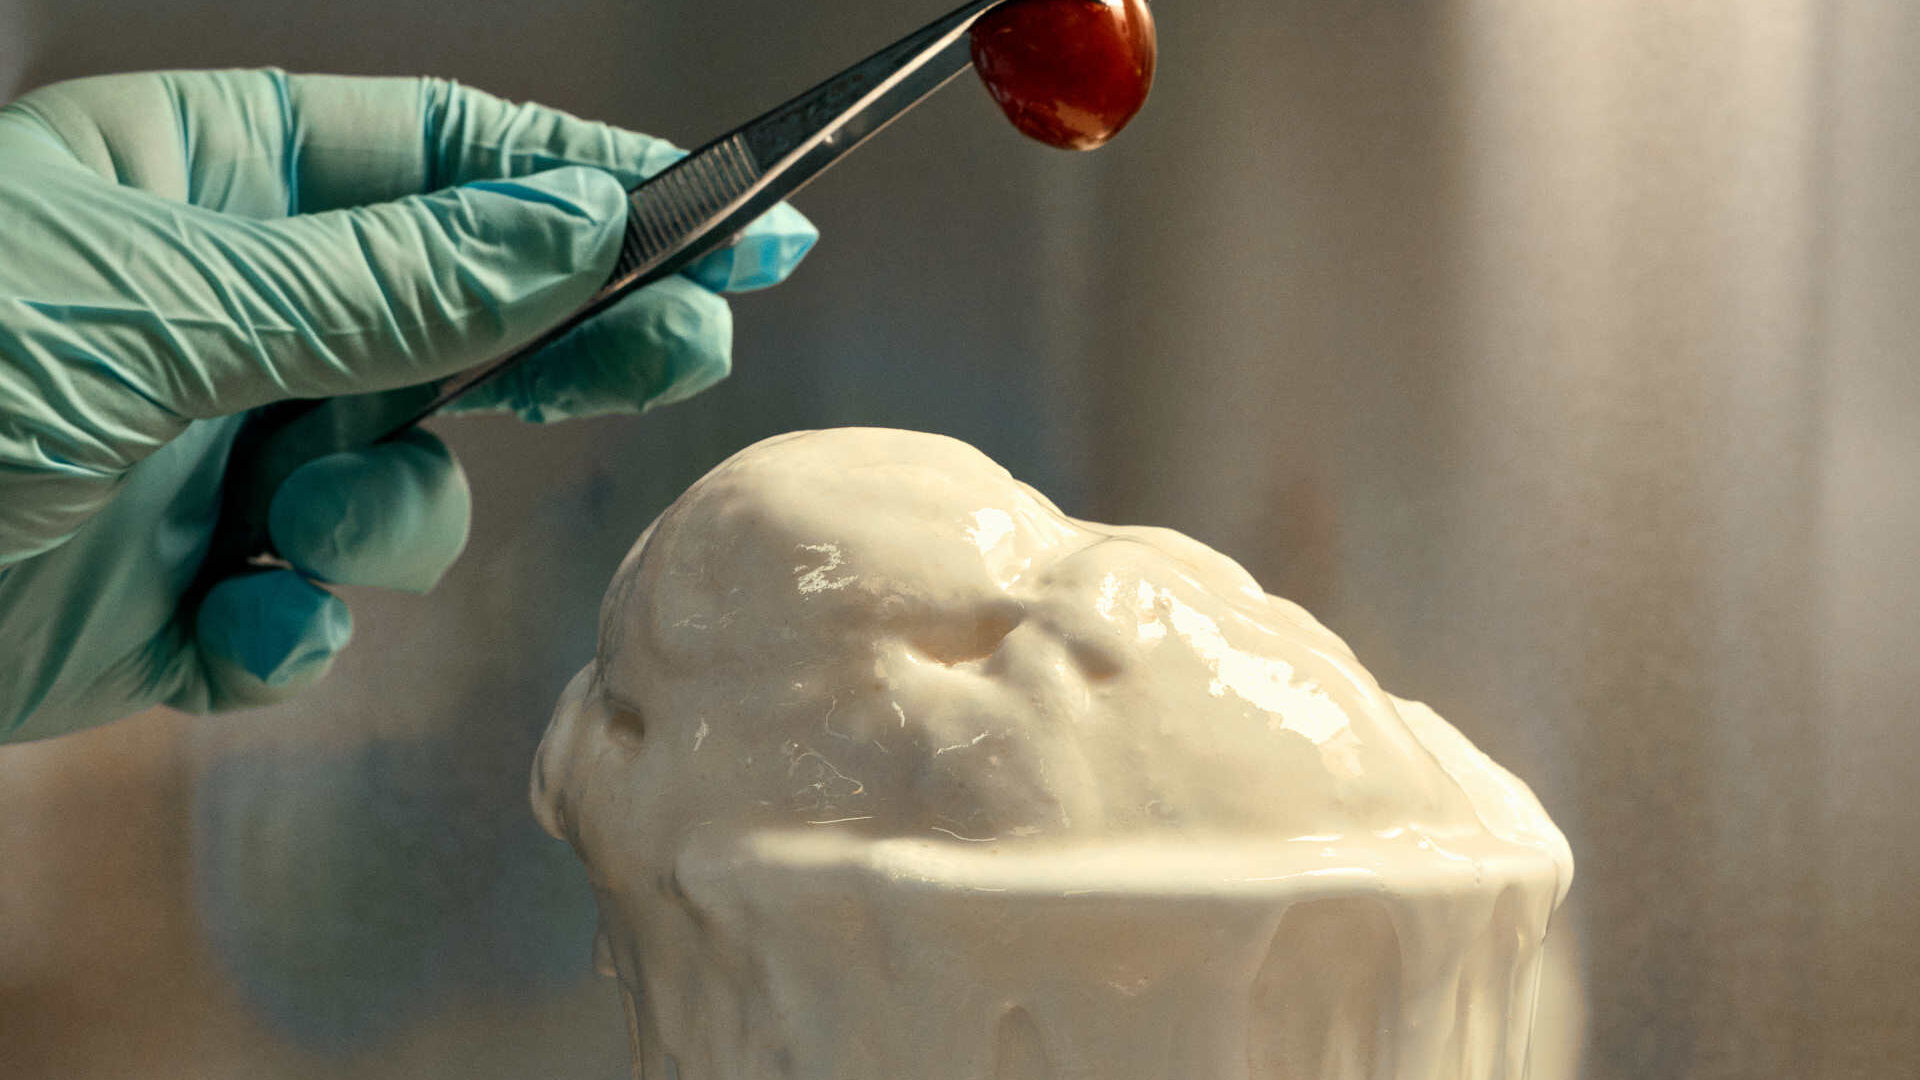 Plastica: il gelato alla vaniglia di Eleonora Ortolani fatto dai rifiuti plastici